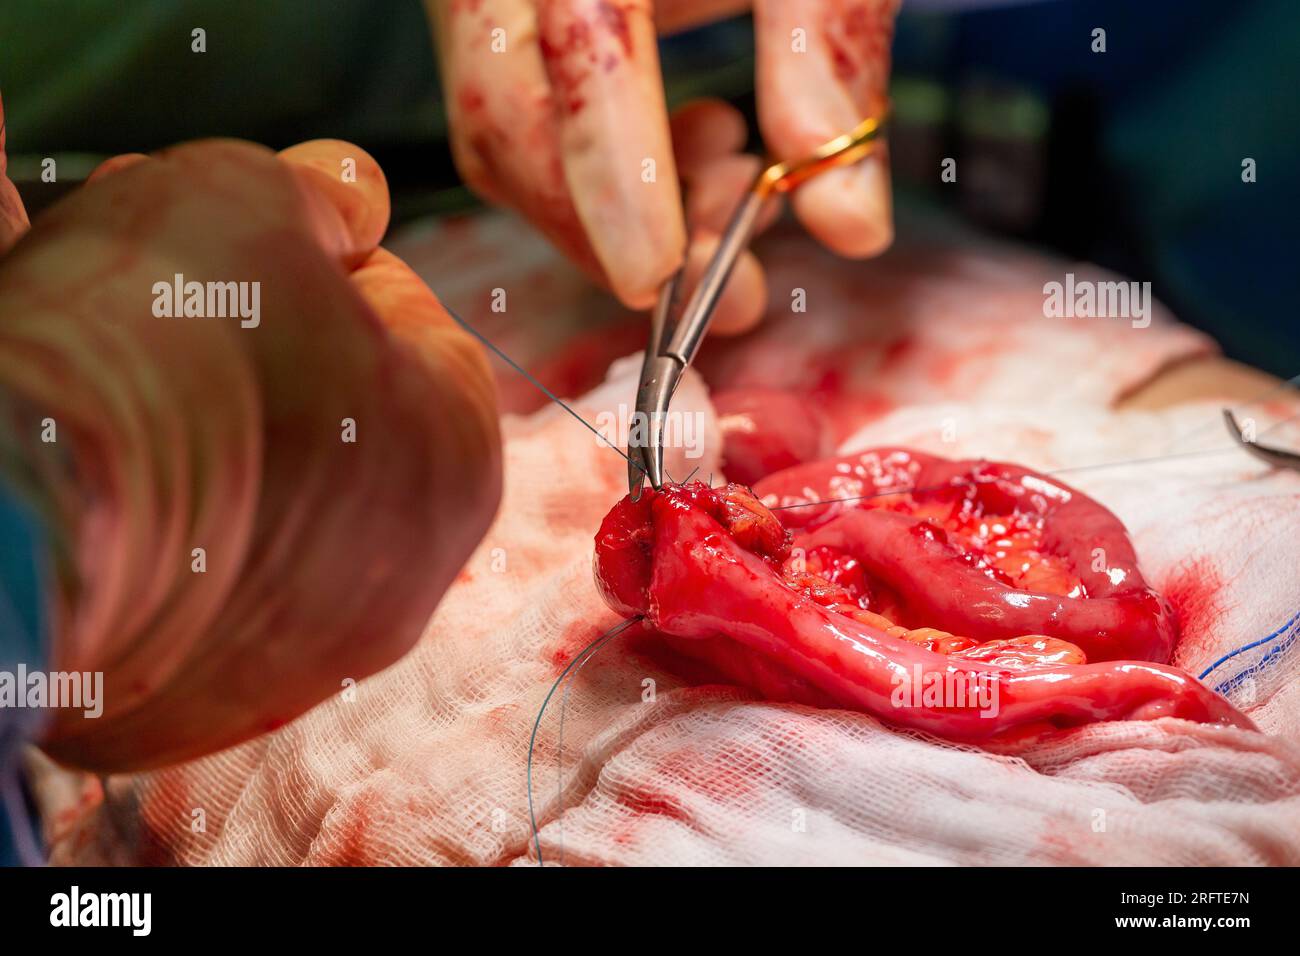 Opération chirurgicale, gros plan sur le champ opératoire et les mains des chirurgiens. Banque D'Images